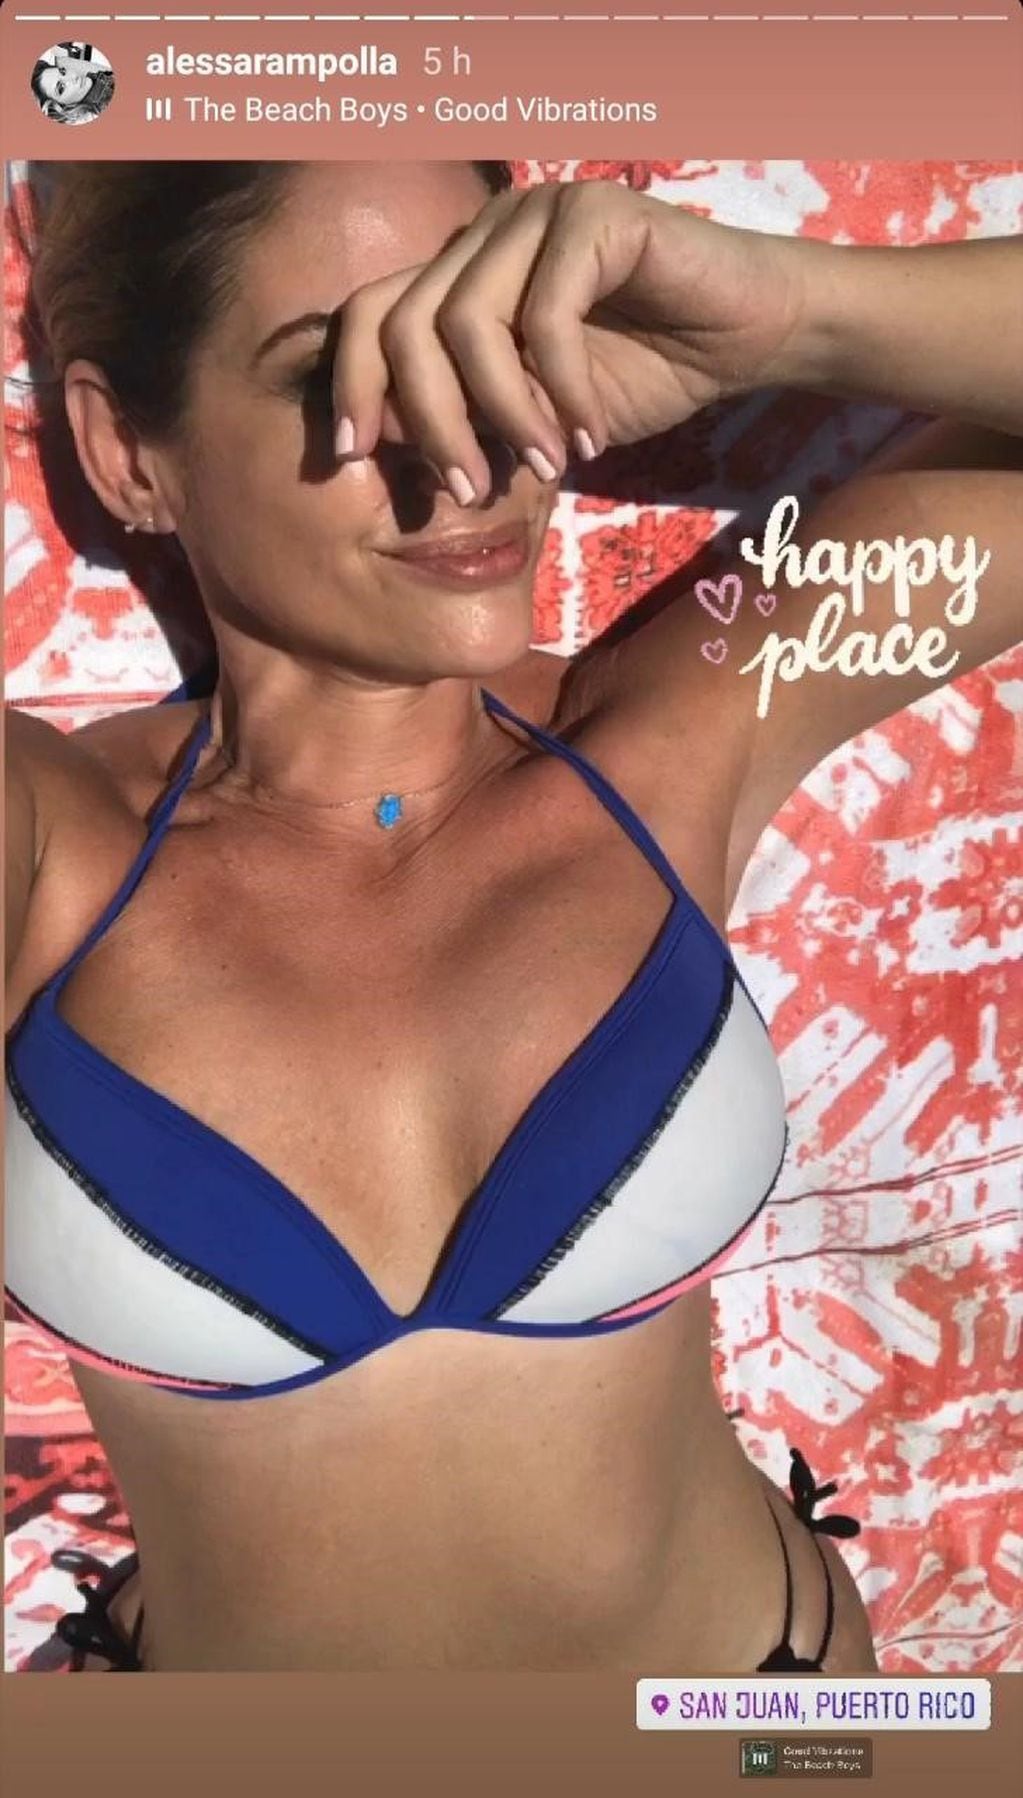 Alessandra Rampolla, repatriada en Puerto Rico, se mostró en bikini desde la playa
(Foto: Instagram)